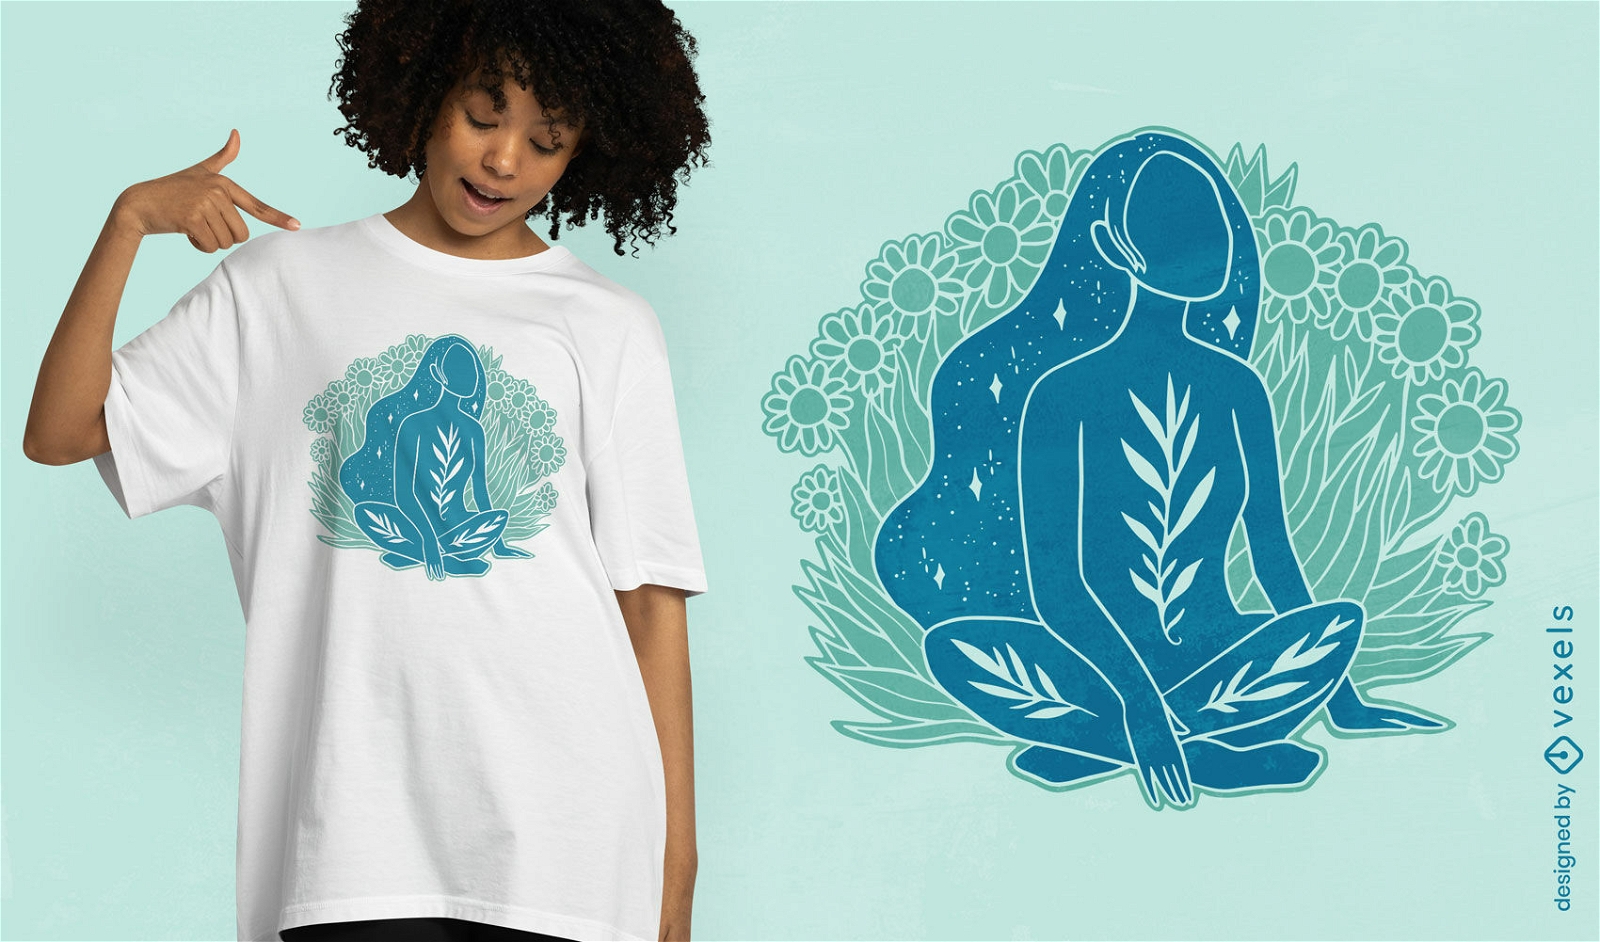 Diseño de camiseta de naturaleza de mujer mística.